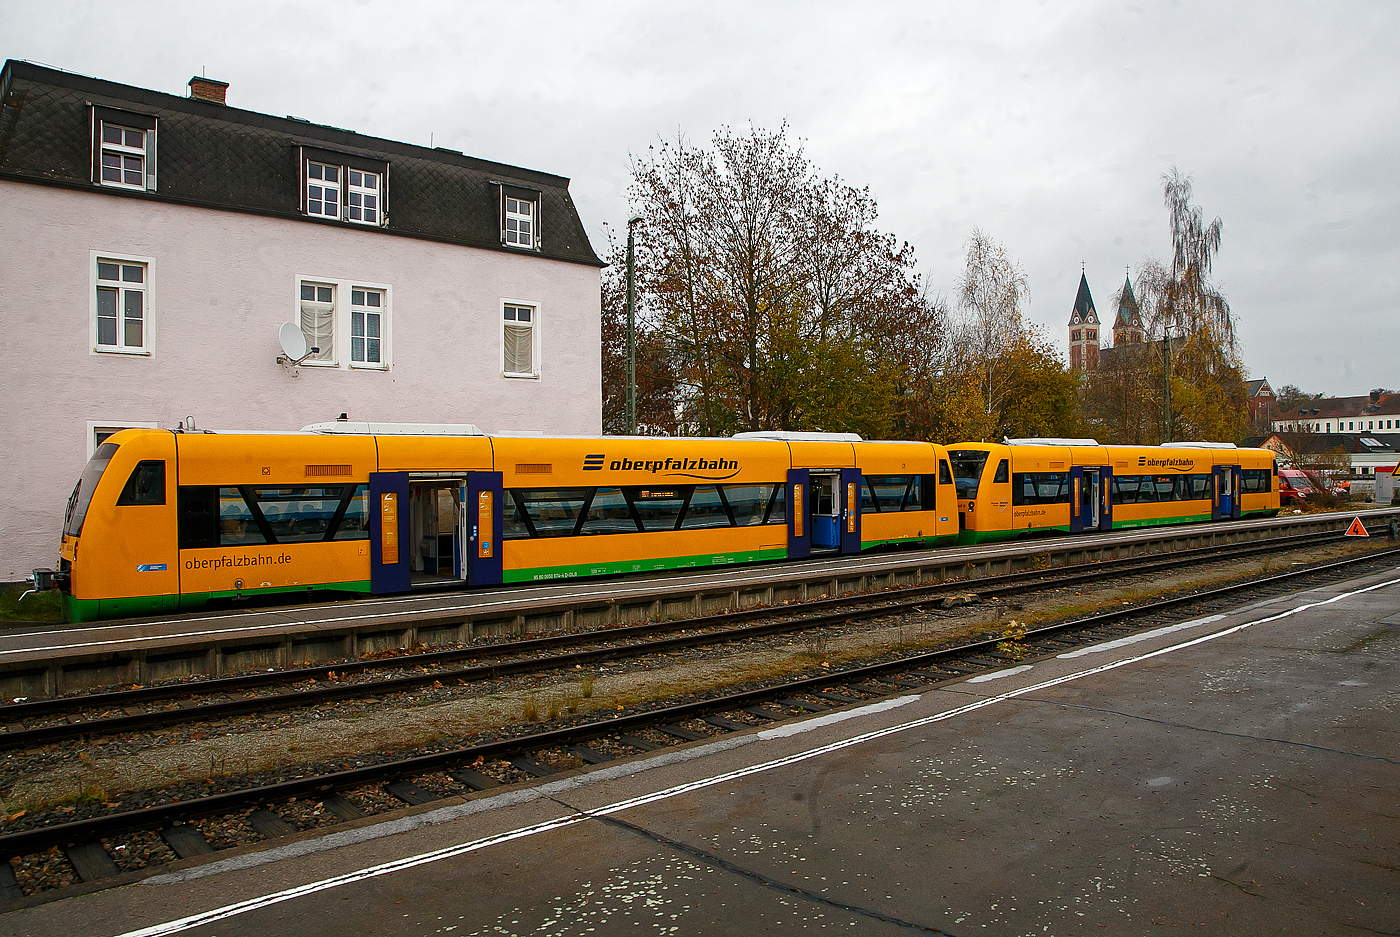 Zwei gekuppelte STADLER Regio-Shuttle RS1 der „oberpfalzbahn“ eine Marke der „Die Länderbahn GmbH (DLB)“, vorne (95 80 0650 669-4 D-DLB) und hinten 650 674 (95 80 0650 674-4 D-DLB), stehen am 22.11.2022 in Cham (Oberpfalz), als RB 27 (ex OPB 3) nach Furth im Wald, zur Abfahrt bereit. 

Diese beiden Regio-Shuttle RS1 wurden 2000 noch von ADtranz (damals DaimlerChrysler Rail Systems) gebaut, der 650 669 unter Fabriknummer 36893 und der 650 074 unter Fabriknummer 36898. Die RS1 sind ursprünglich ein Produkt des Herstellers Adtranz, mit der Übernahme von Adtranz von Bombardier Transportation musste diese den Standort Berlin aus kartellrechtlichen Gründen verkaufen, der somit an die Stadler Rail AG ging. So hat dann Stadler die Produktion der RS1 übernommen.

Die 13 STADLER Regio-Shuttle RS1 (Baujahr 2000/03) der „oberpfalzbahn“ wurden 2013/2014 modernisiert (komplett entkernt und umgebaut). Für die kleinen Fahrgäste ist eine Kinderspielecke entstanden. Verbessert wurde auch die Fahrgastinformation im Fahrzeug. Neue Monitore wurden im Bereich des Aus- und Einstiegs eingebaut und informieren über den aktuellen Verlauf der Fahrt und die weiteren Anschlüsse. Zwei Mehrzweckbereiche pro Fahrzeug bieten ausreichend Platz für bis zu sechs Fahrräder, Kinderwagen und Gepäck. Der stufenlose Einstieg ermöglicht auch mobilitätseingeschränkten Personen einen bequemen Zugang. Das Fahrzeug bietet Platz für ca. 155 Fahrgäste (72 Sitzplätze). 

Der Antrieb erfolgt über 2 MAN Dieselmotoren mit je 257 KW (350 PS) Leitung hydromechanisch über 2 Voith-Diwabus Getriebe U 864, die Höchstgeschwindigkeit beträgt 120 km/h.